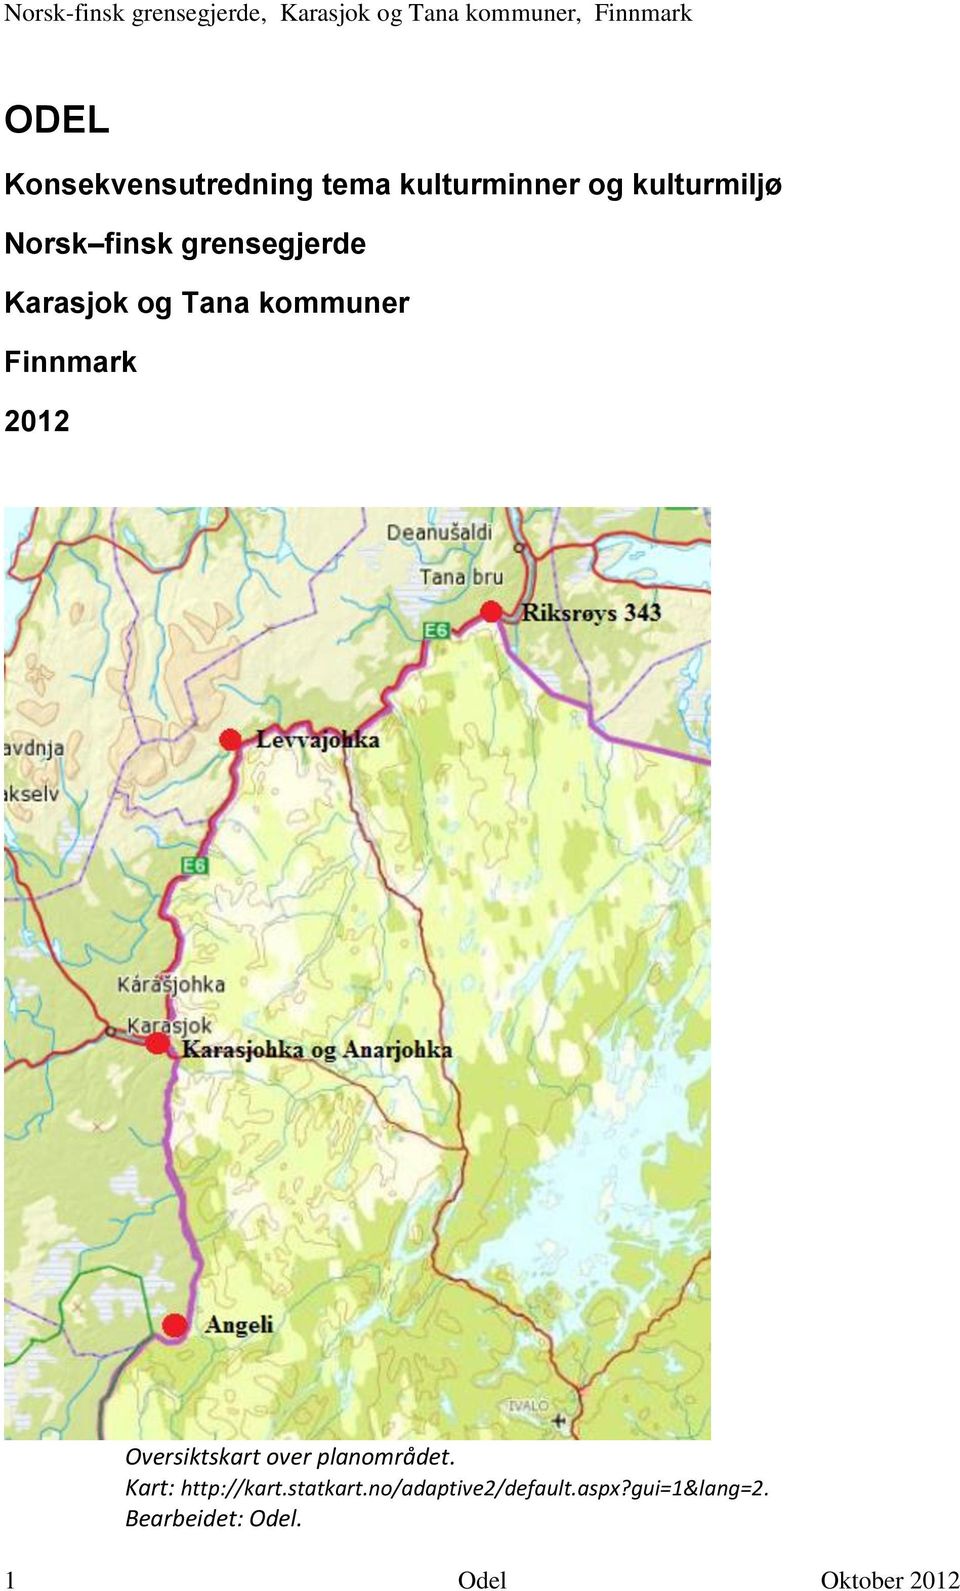 Oversiktskart over planområdet. Kart: http://kart.statkart.